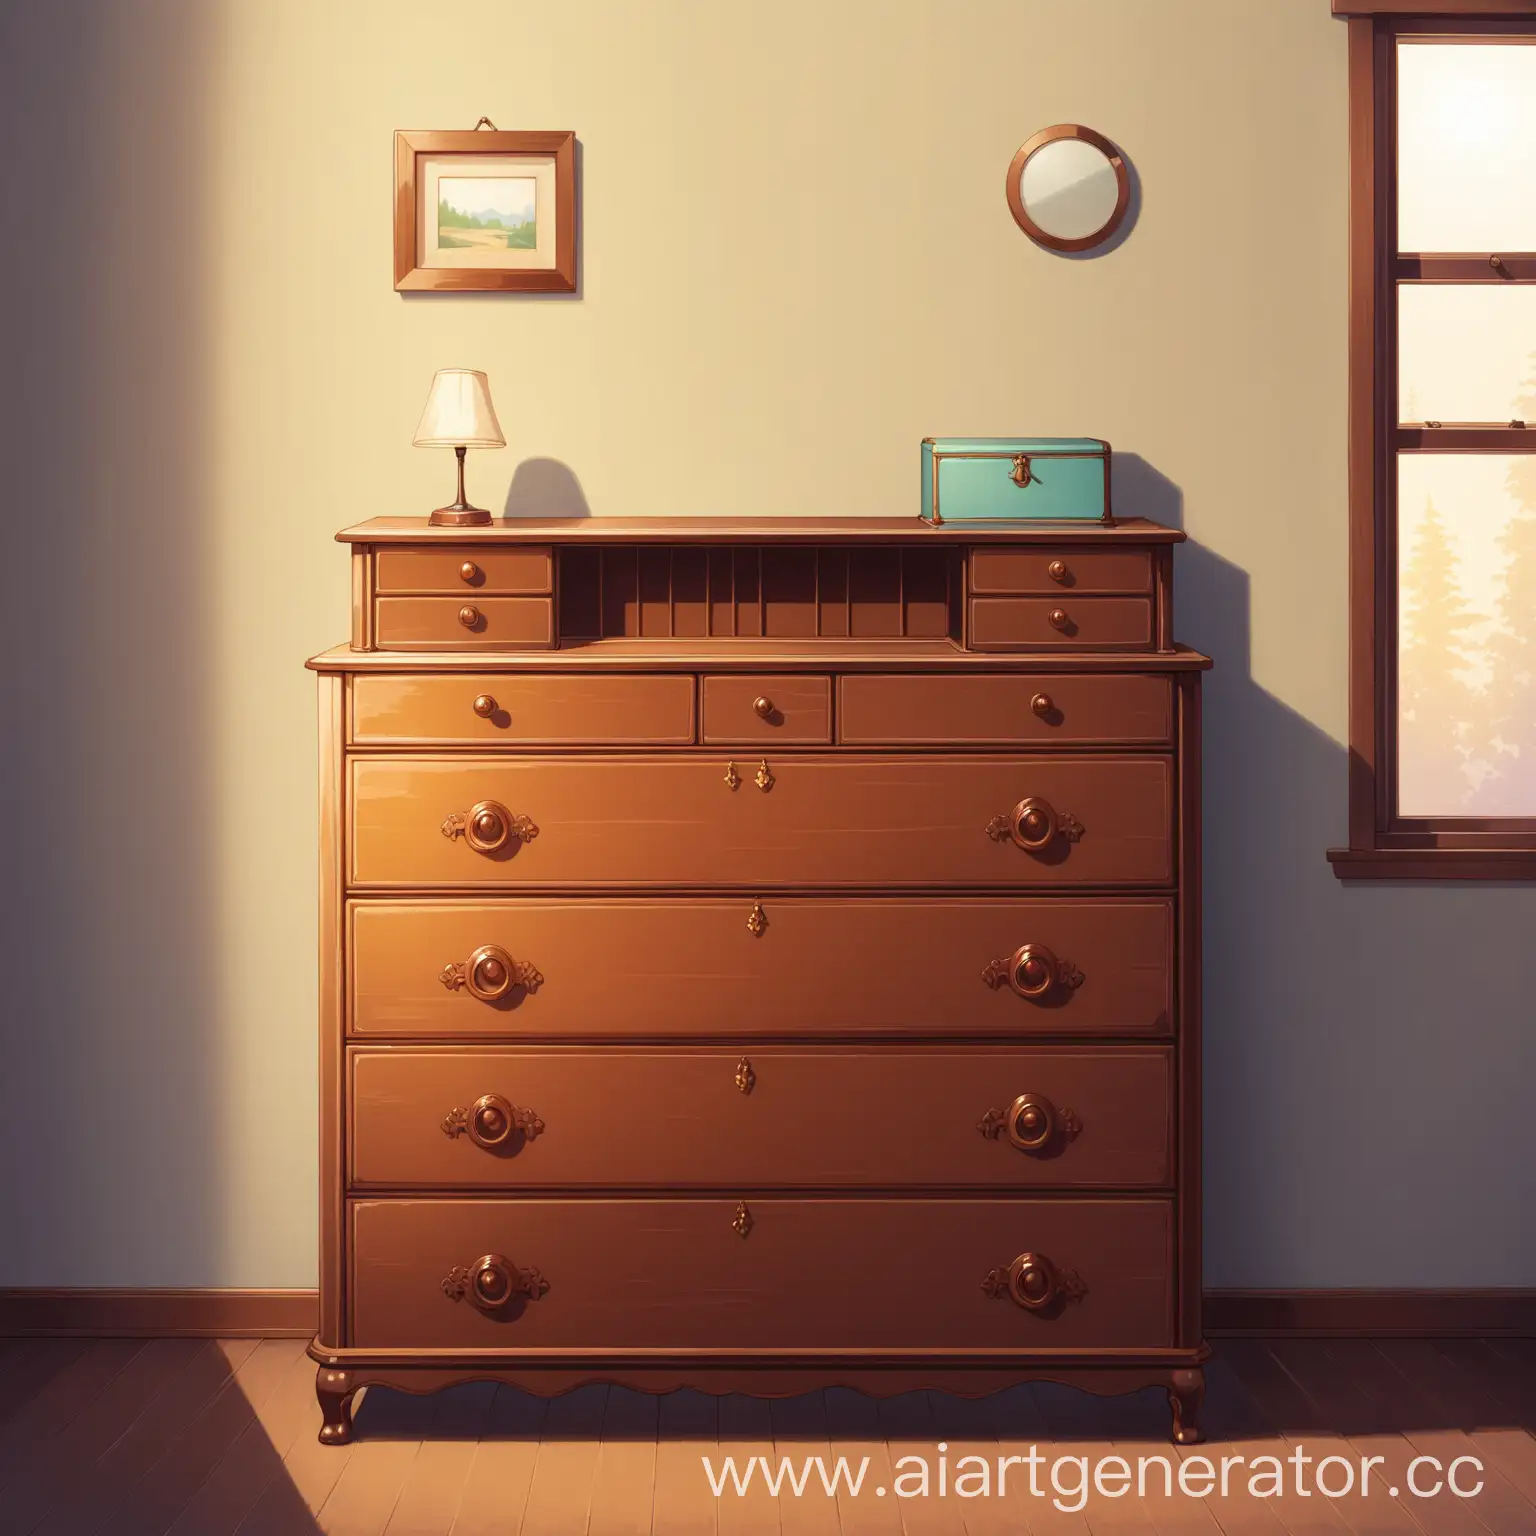 Vintage-Dresser-in-Rustic-Bedroom-Setting